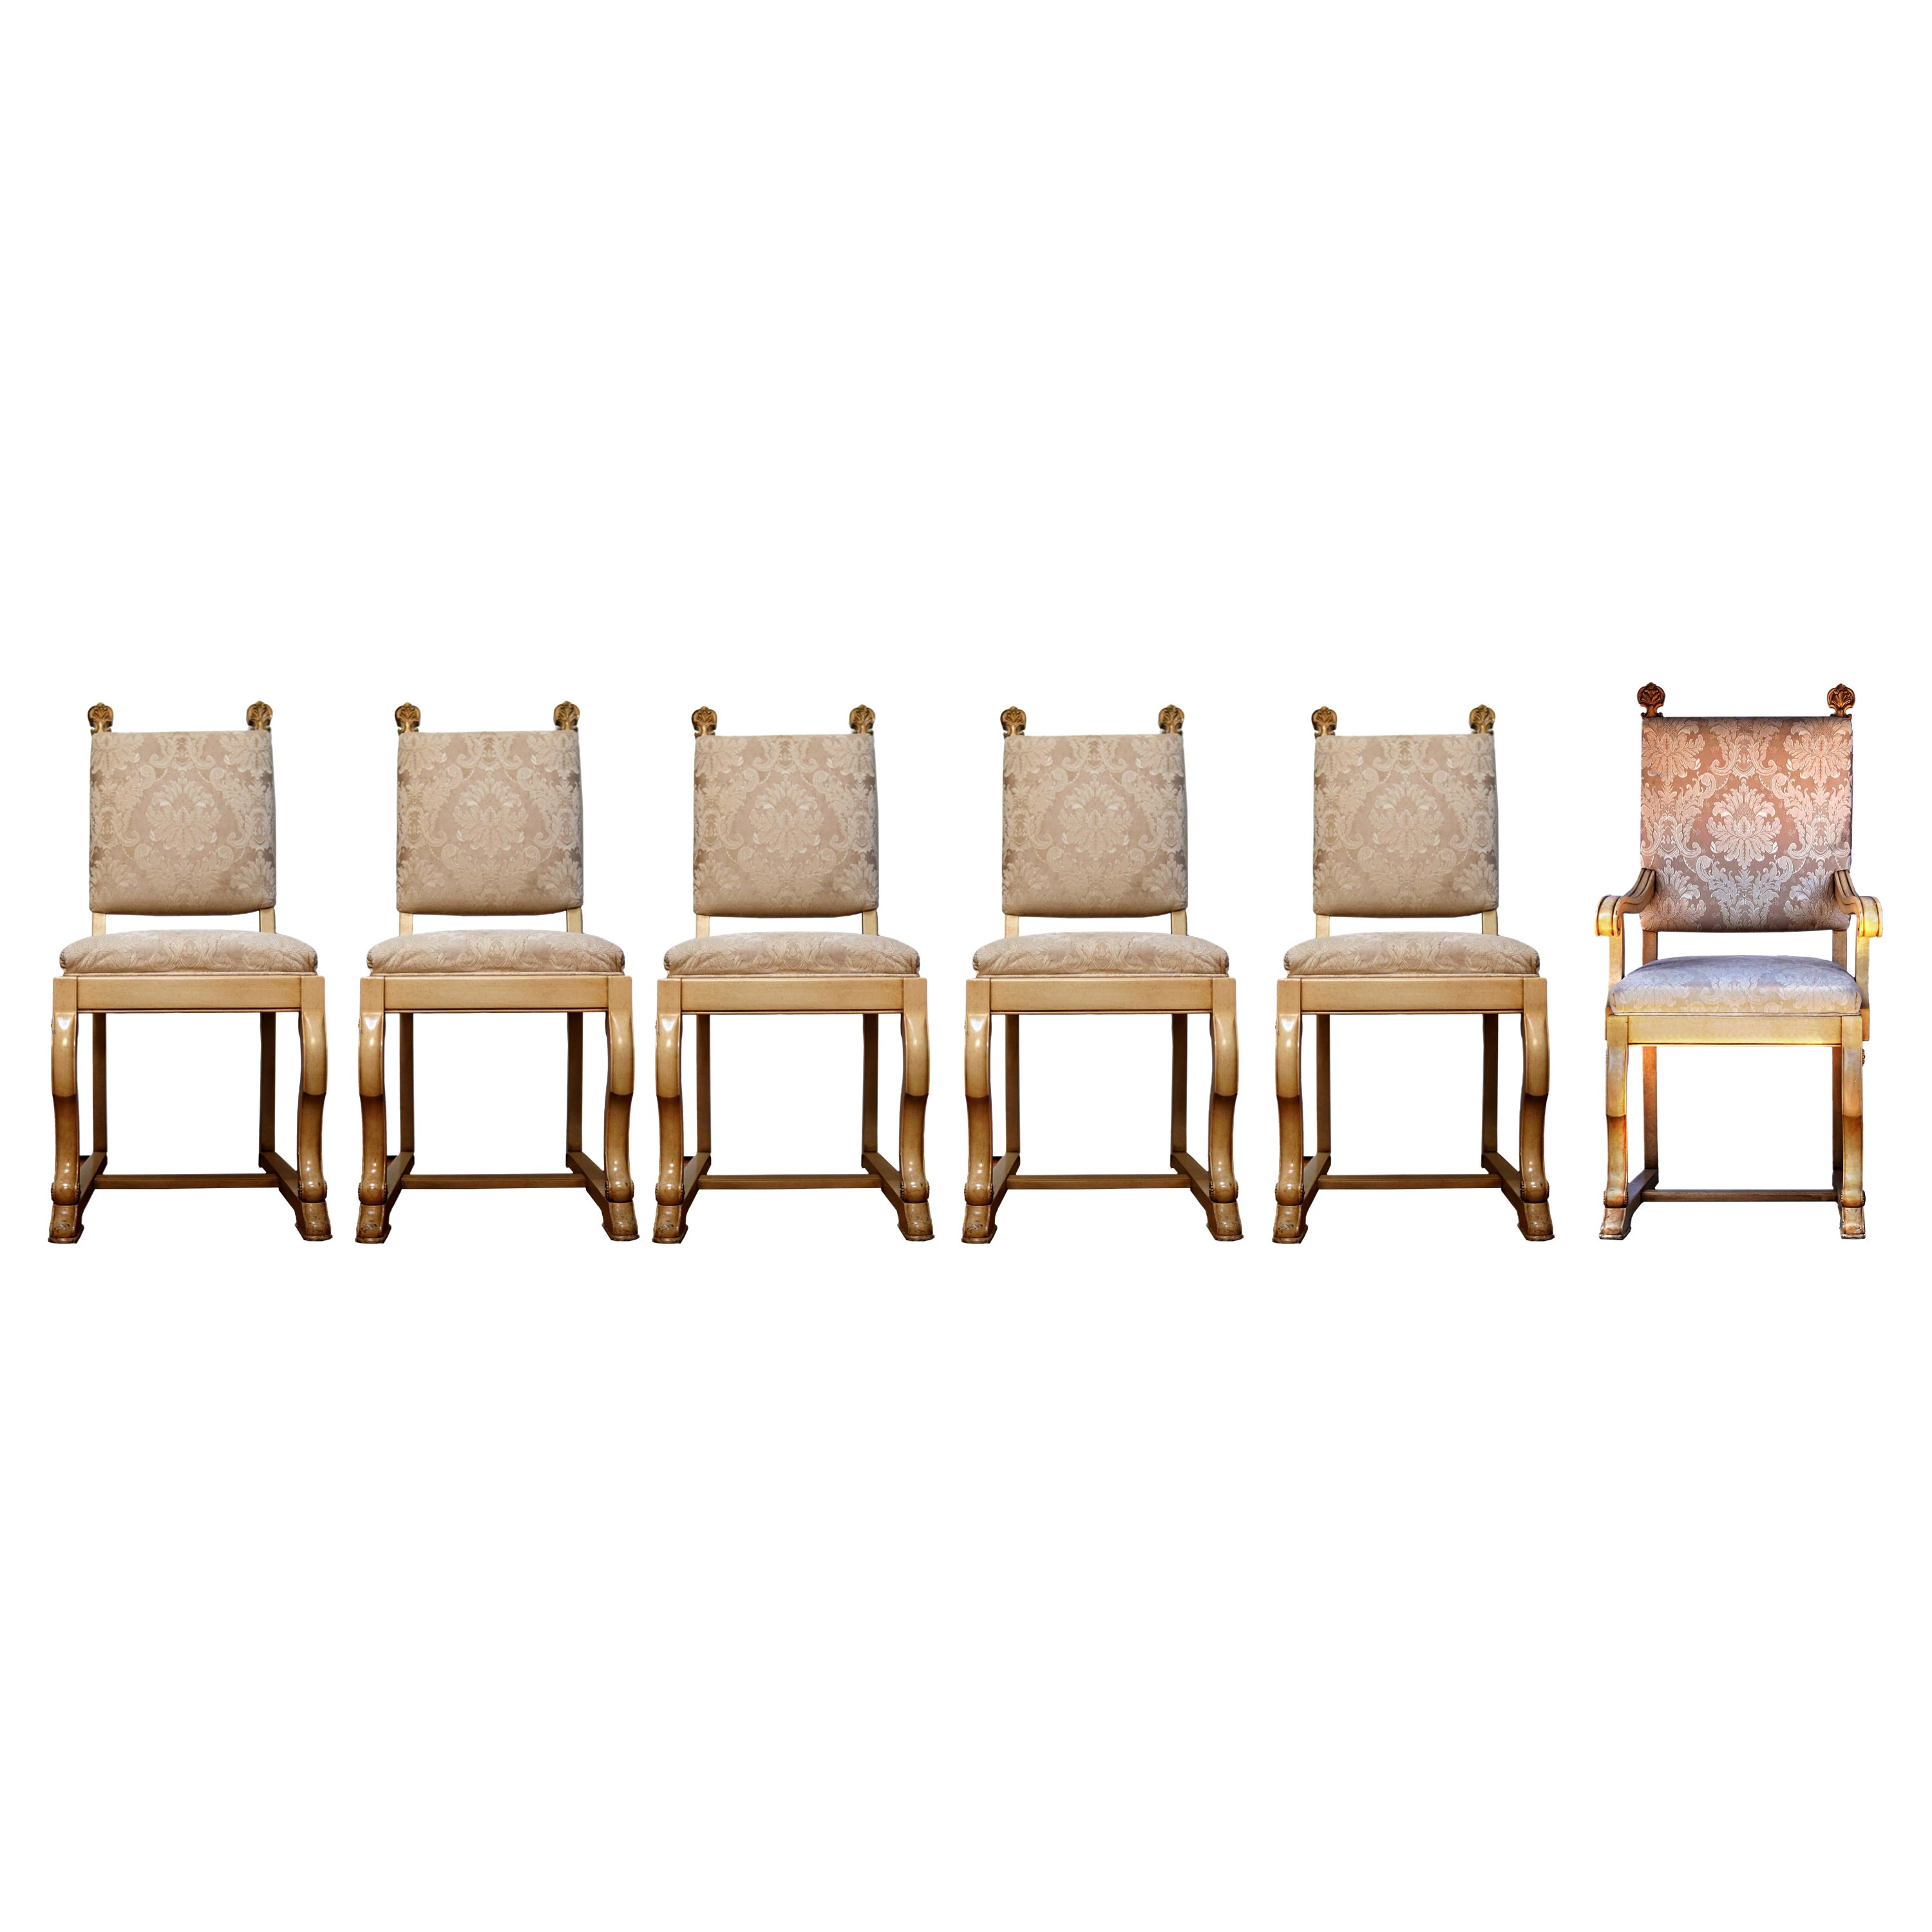 Ensemble de six chaises de salle à manger vintage dorées à la feuille avec fleurons dans le style français